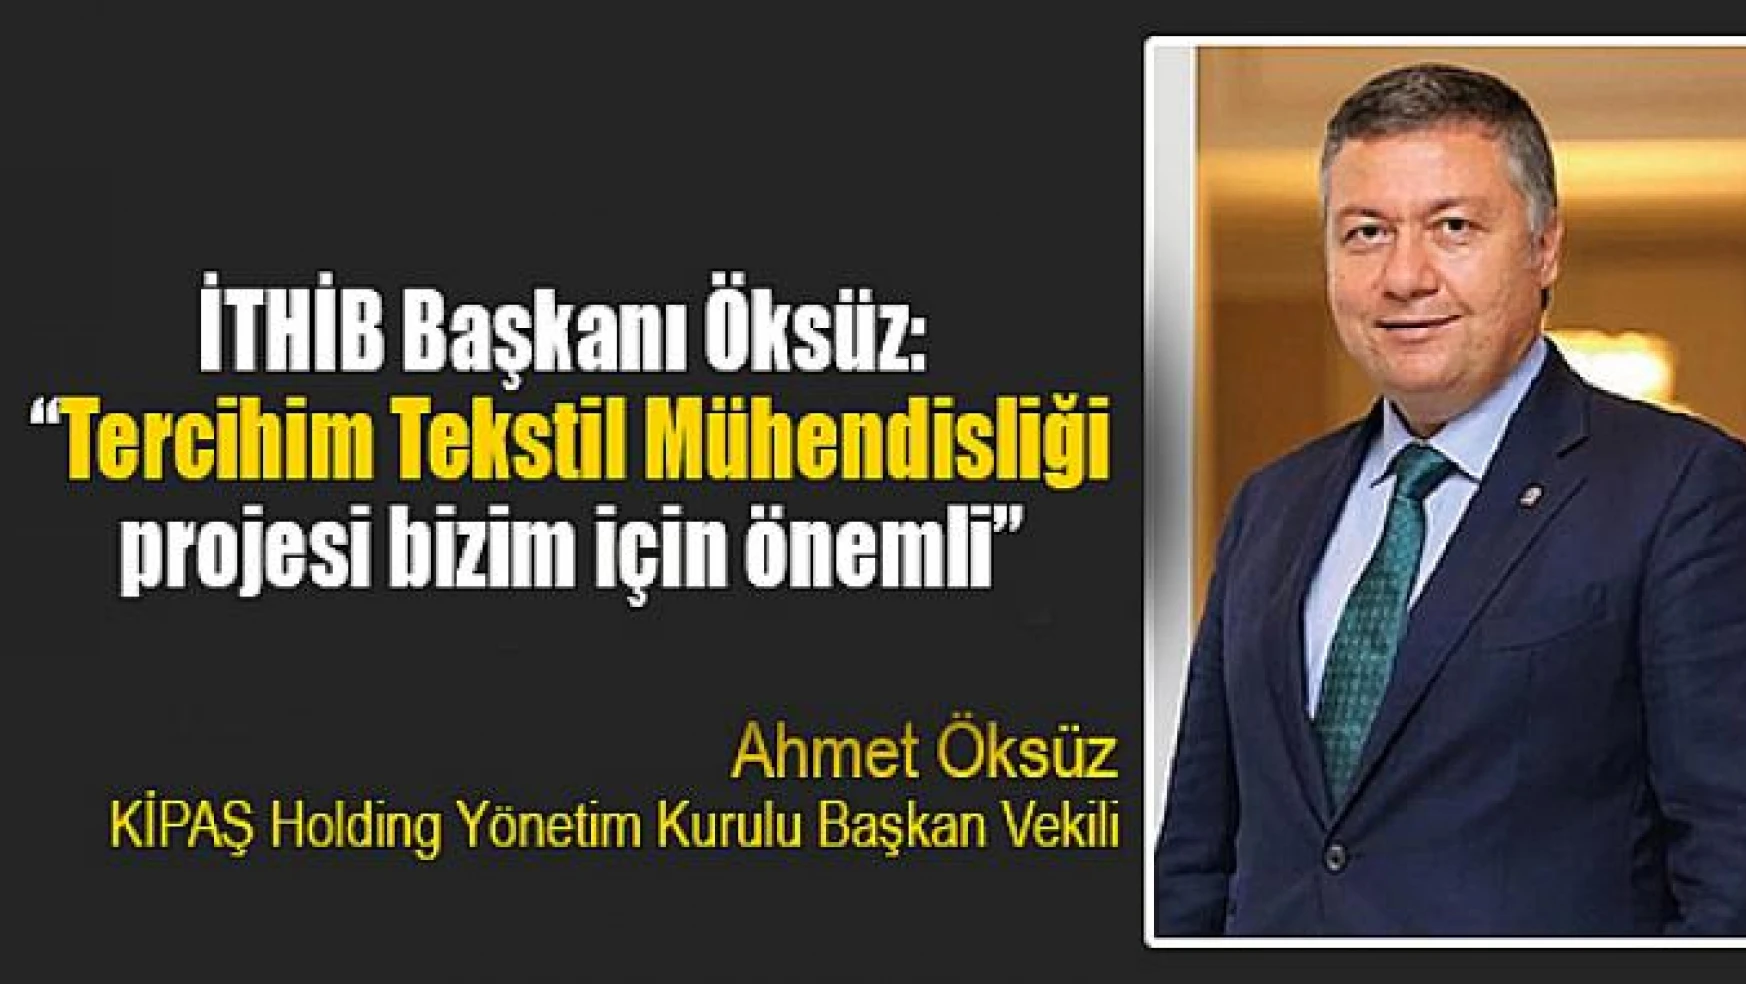 İTHİB Başkanı Öksüz: 'Tercihim Tekstil Mühendisliği projesi bizim için önemli'